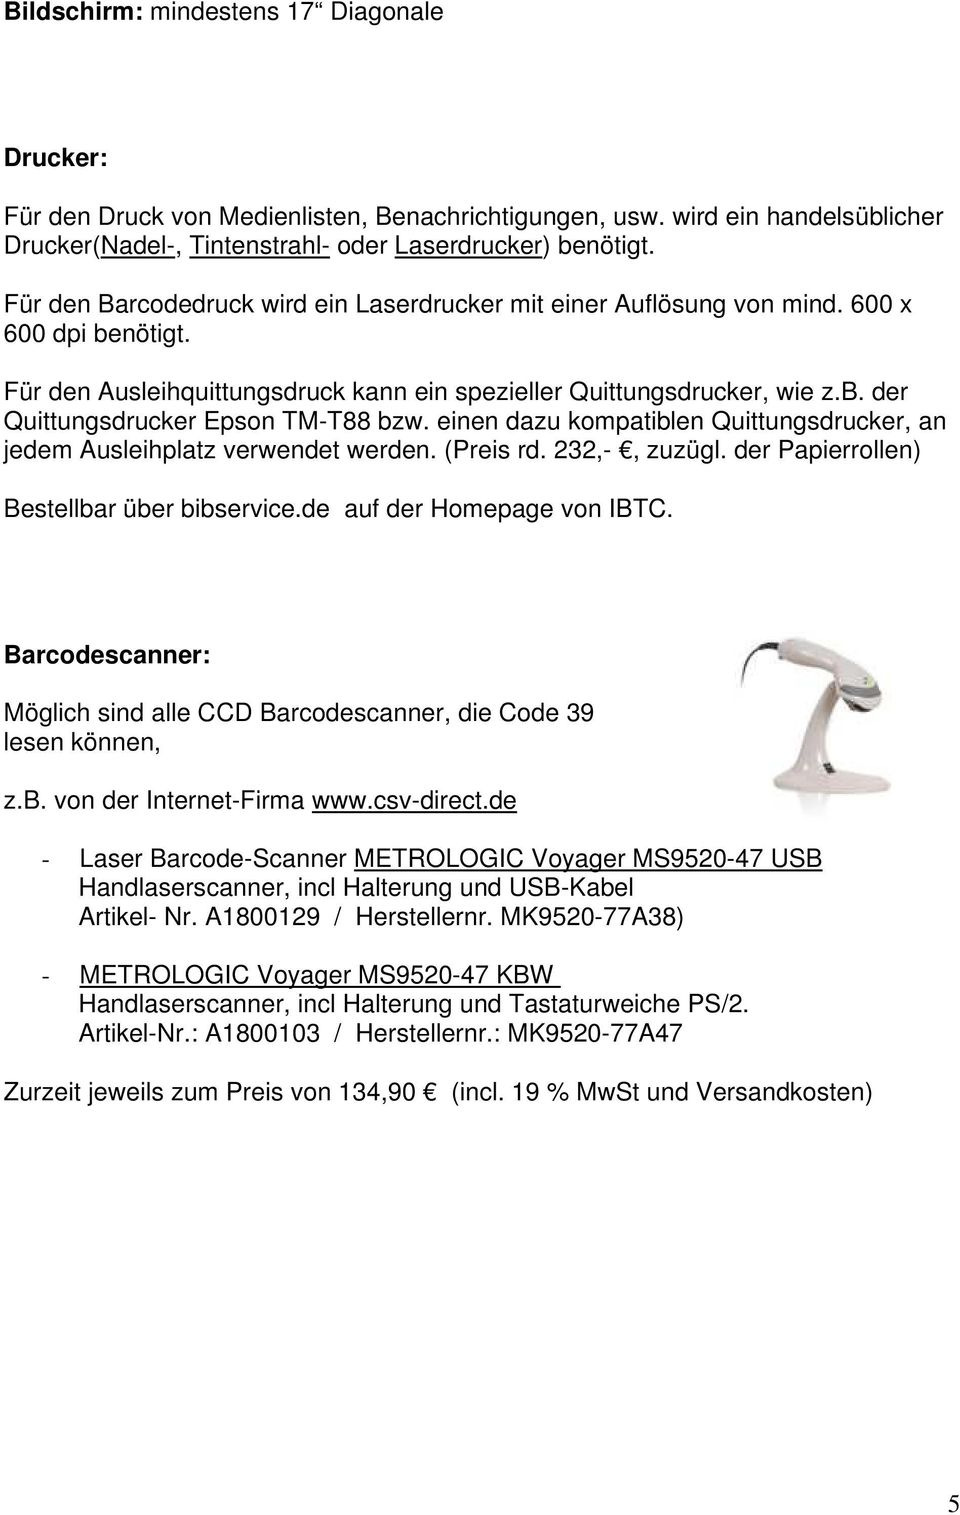 einen dazu kompatiblen Quittungsdrucker, an jedem Ausleihplatz verwendet werden. (Preis rd. 232,-, zuzügl. der Papierrollen) Bestellbar über bibservice.de auf der Homepage von IBTC.